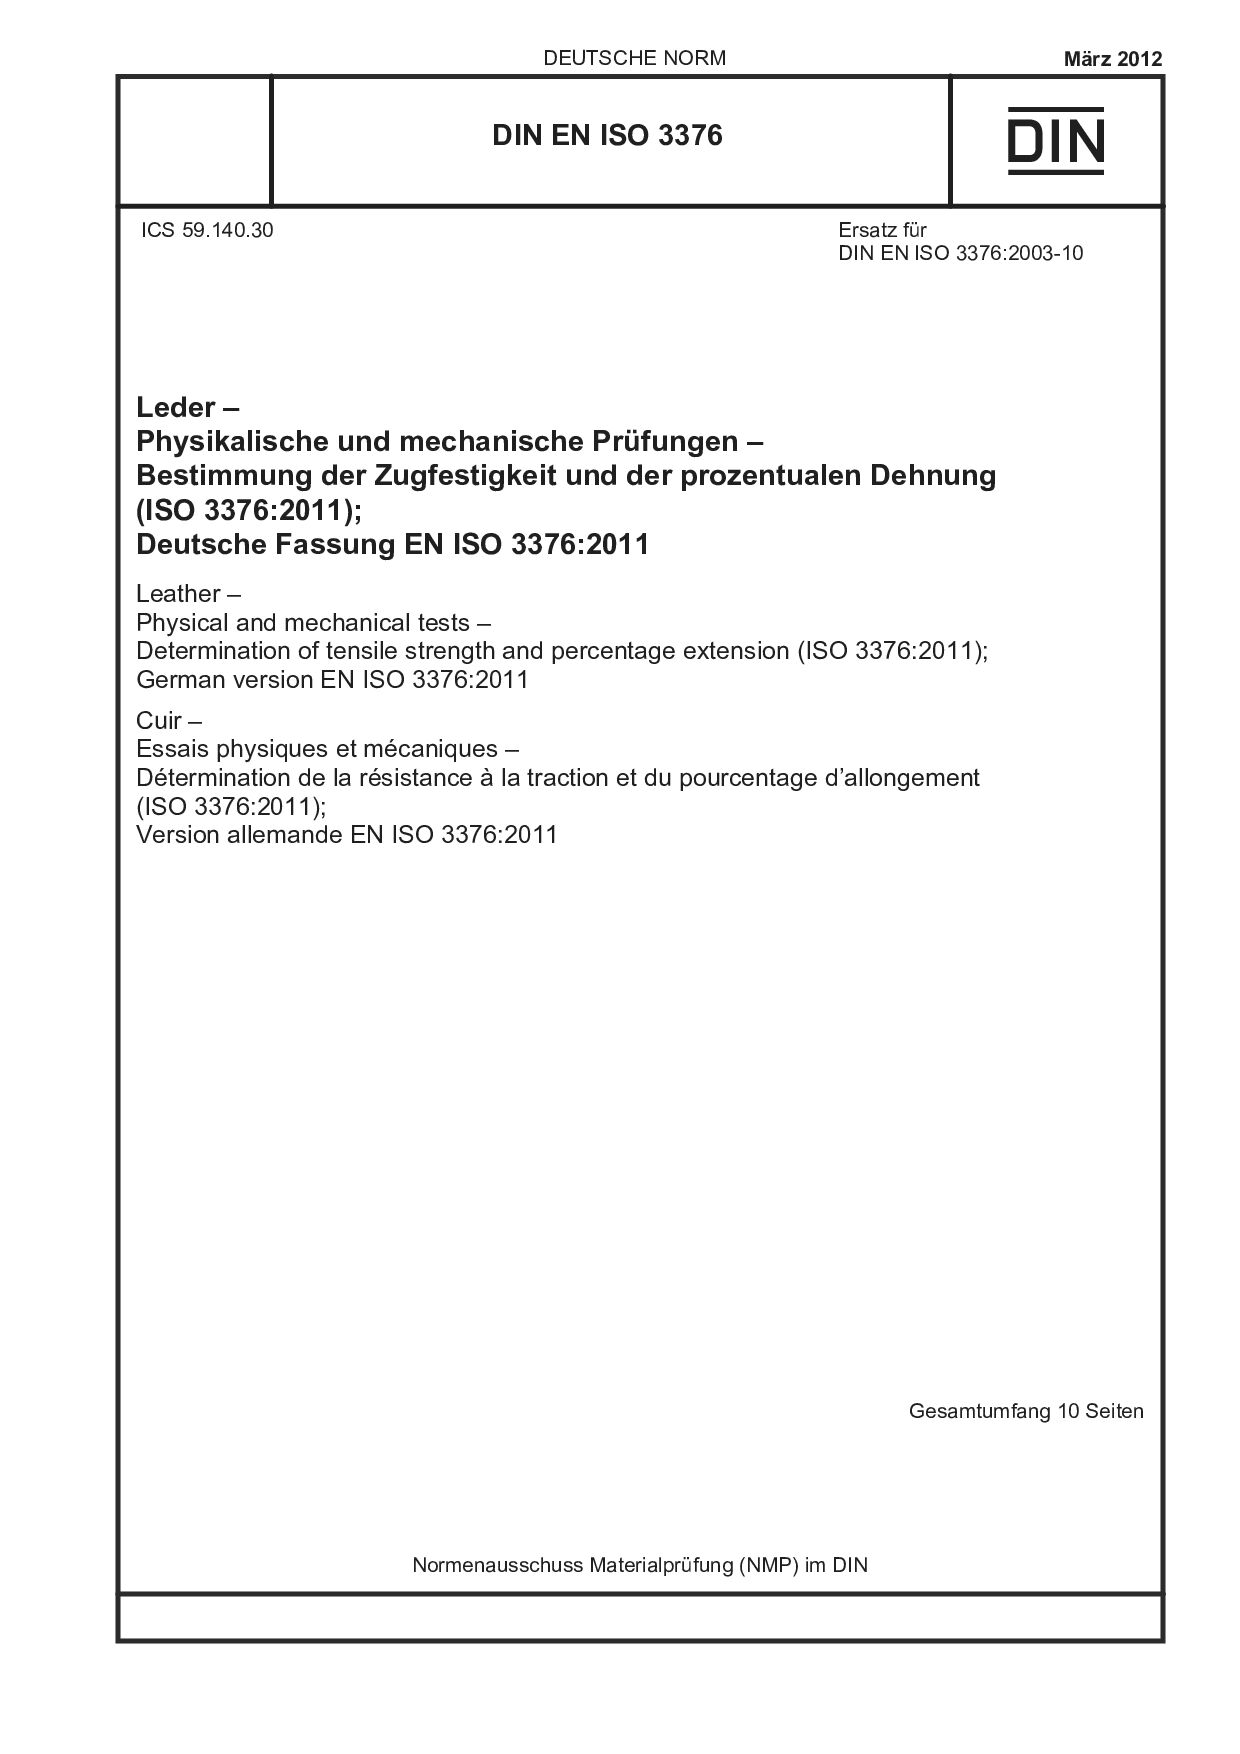 DIN EN ISO 3376:2012封面图